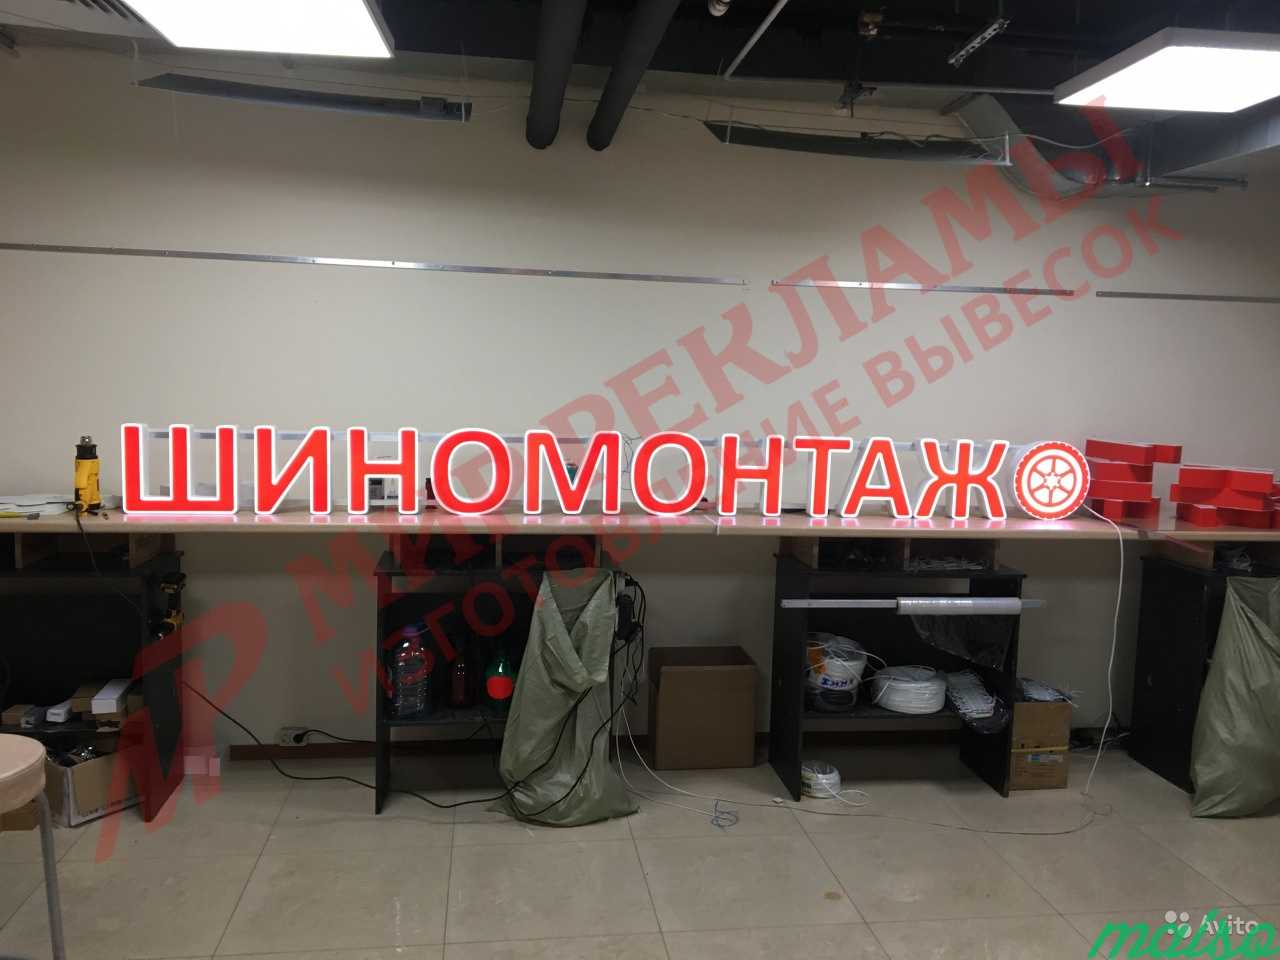 Шиномонтаж яркая световая вывеска объемные буквы в Москве. Фото 5